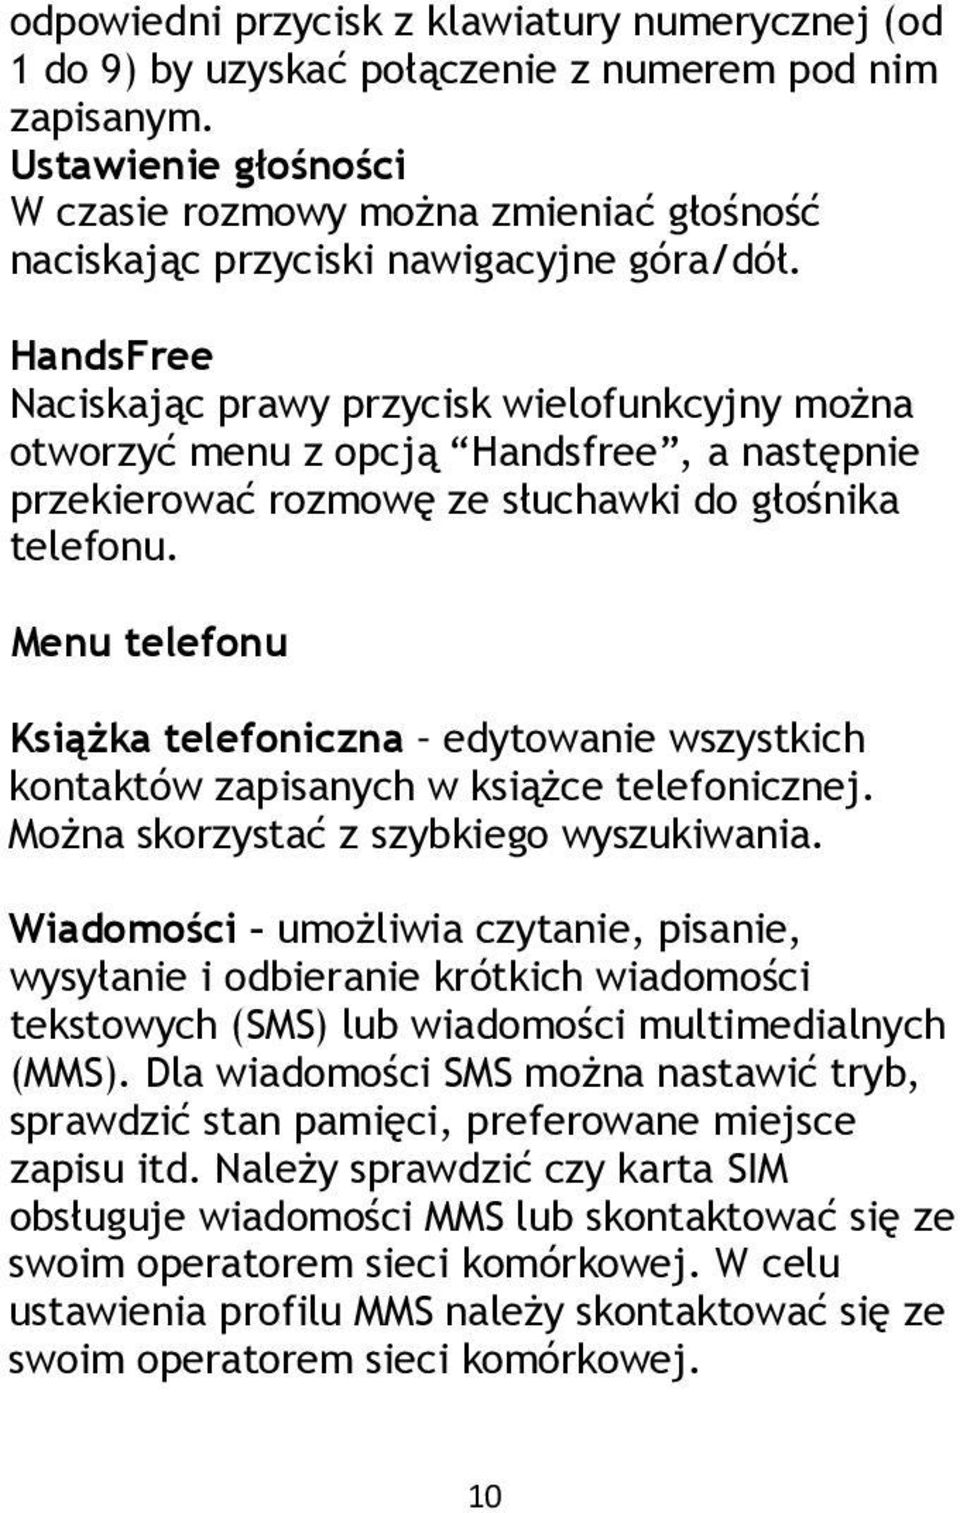 HandsFree Naciskając prawy przycisk wielofunkcyjny można otworzyć menu z opcją Handsfree, a następnie przekierować rozmowę ze słuchawki do głośnika telefonu.